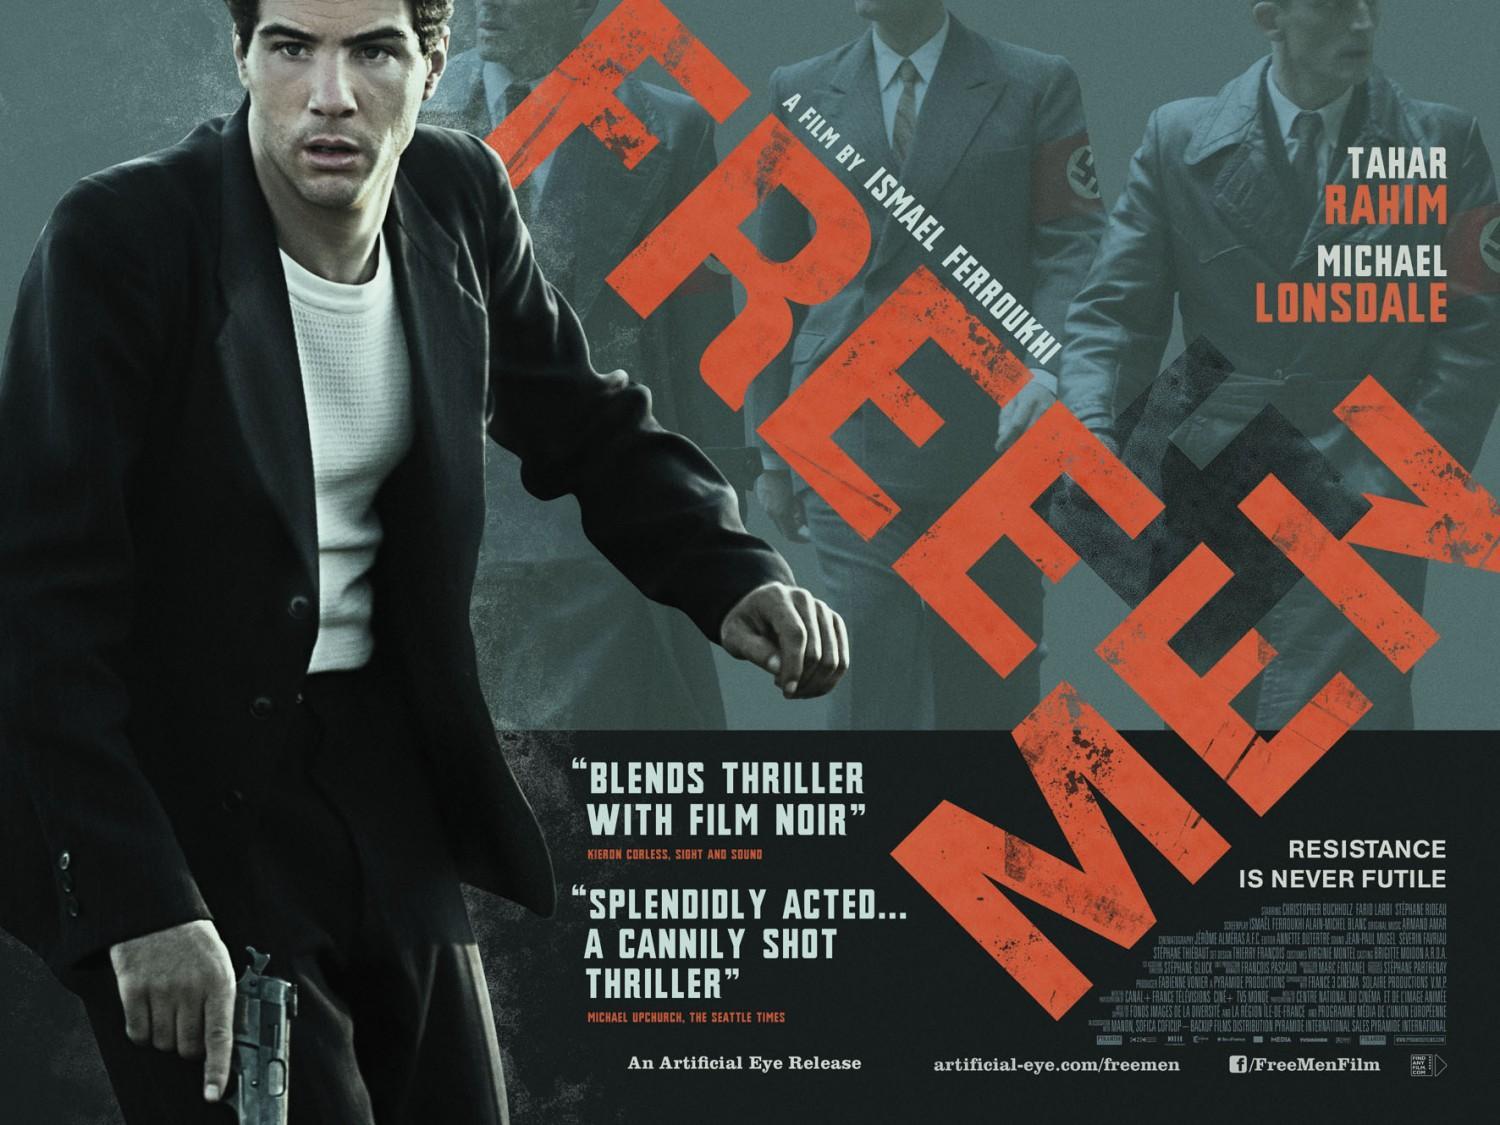 Постер фильма Свободные люди | Les hommes libres